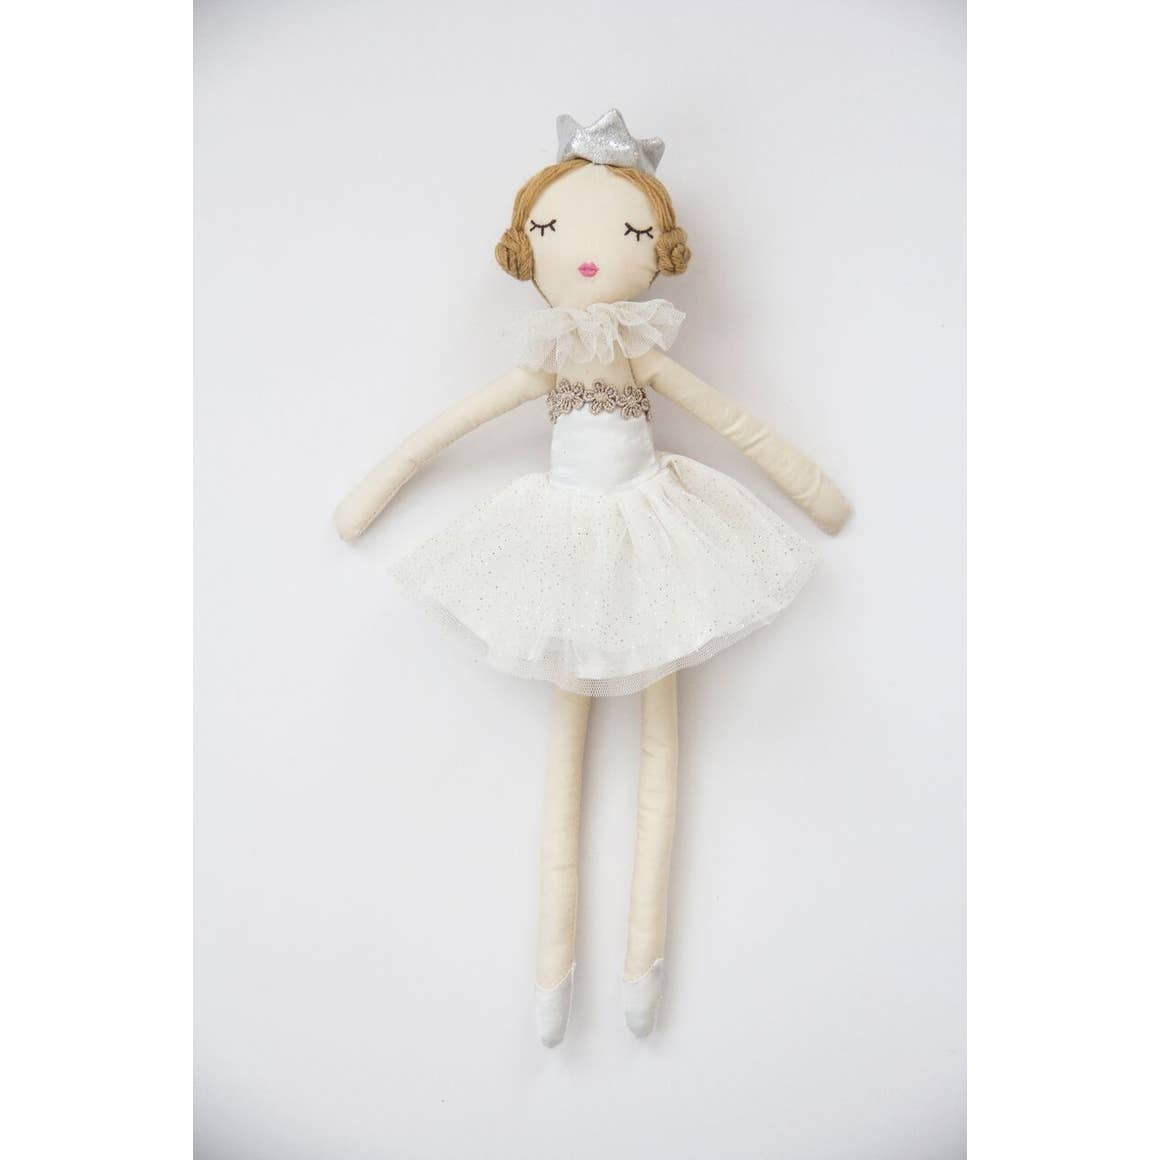 Fairy Princess Doll